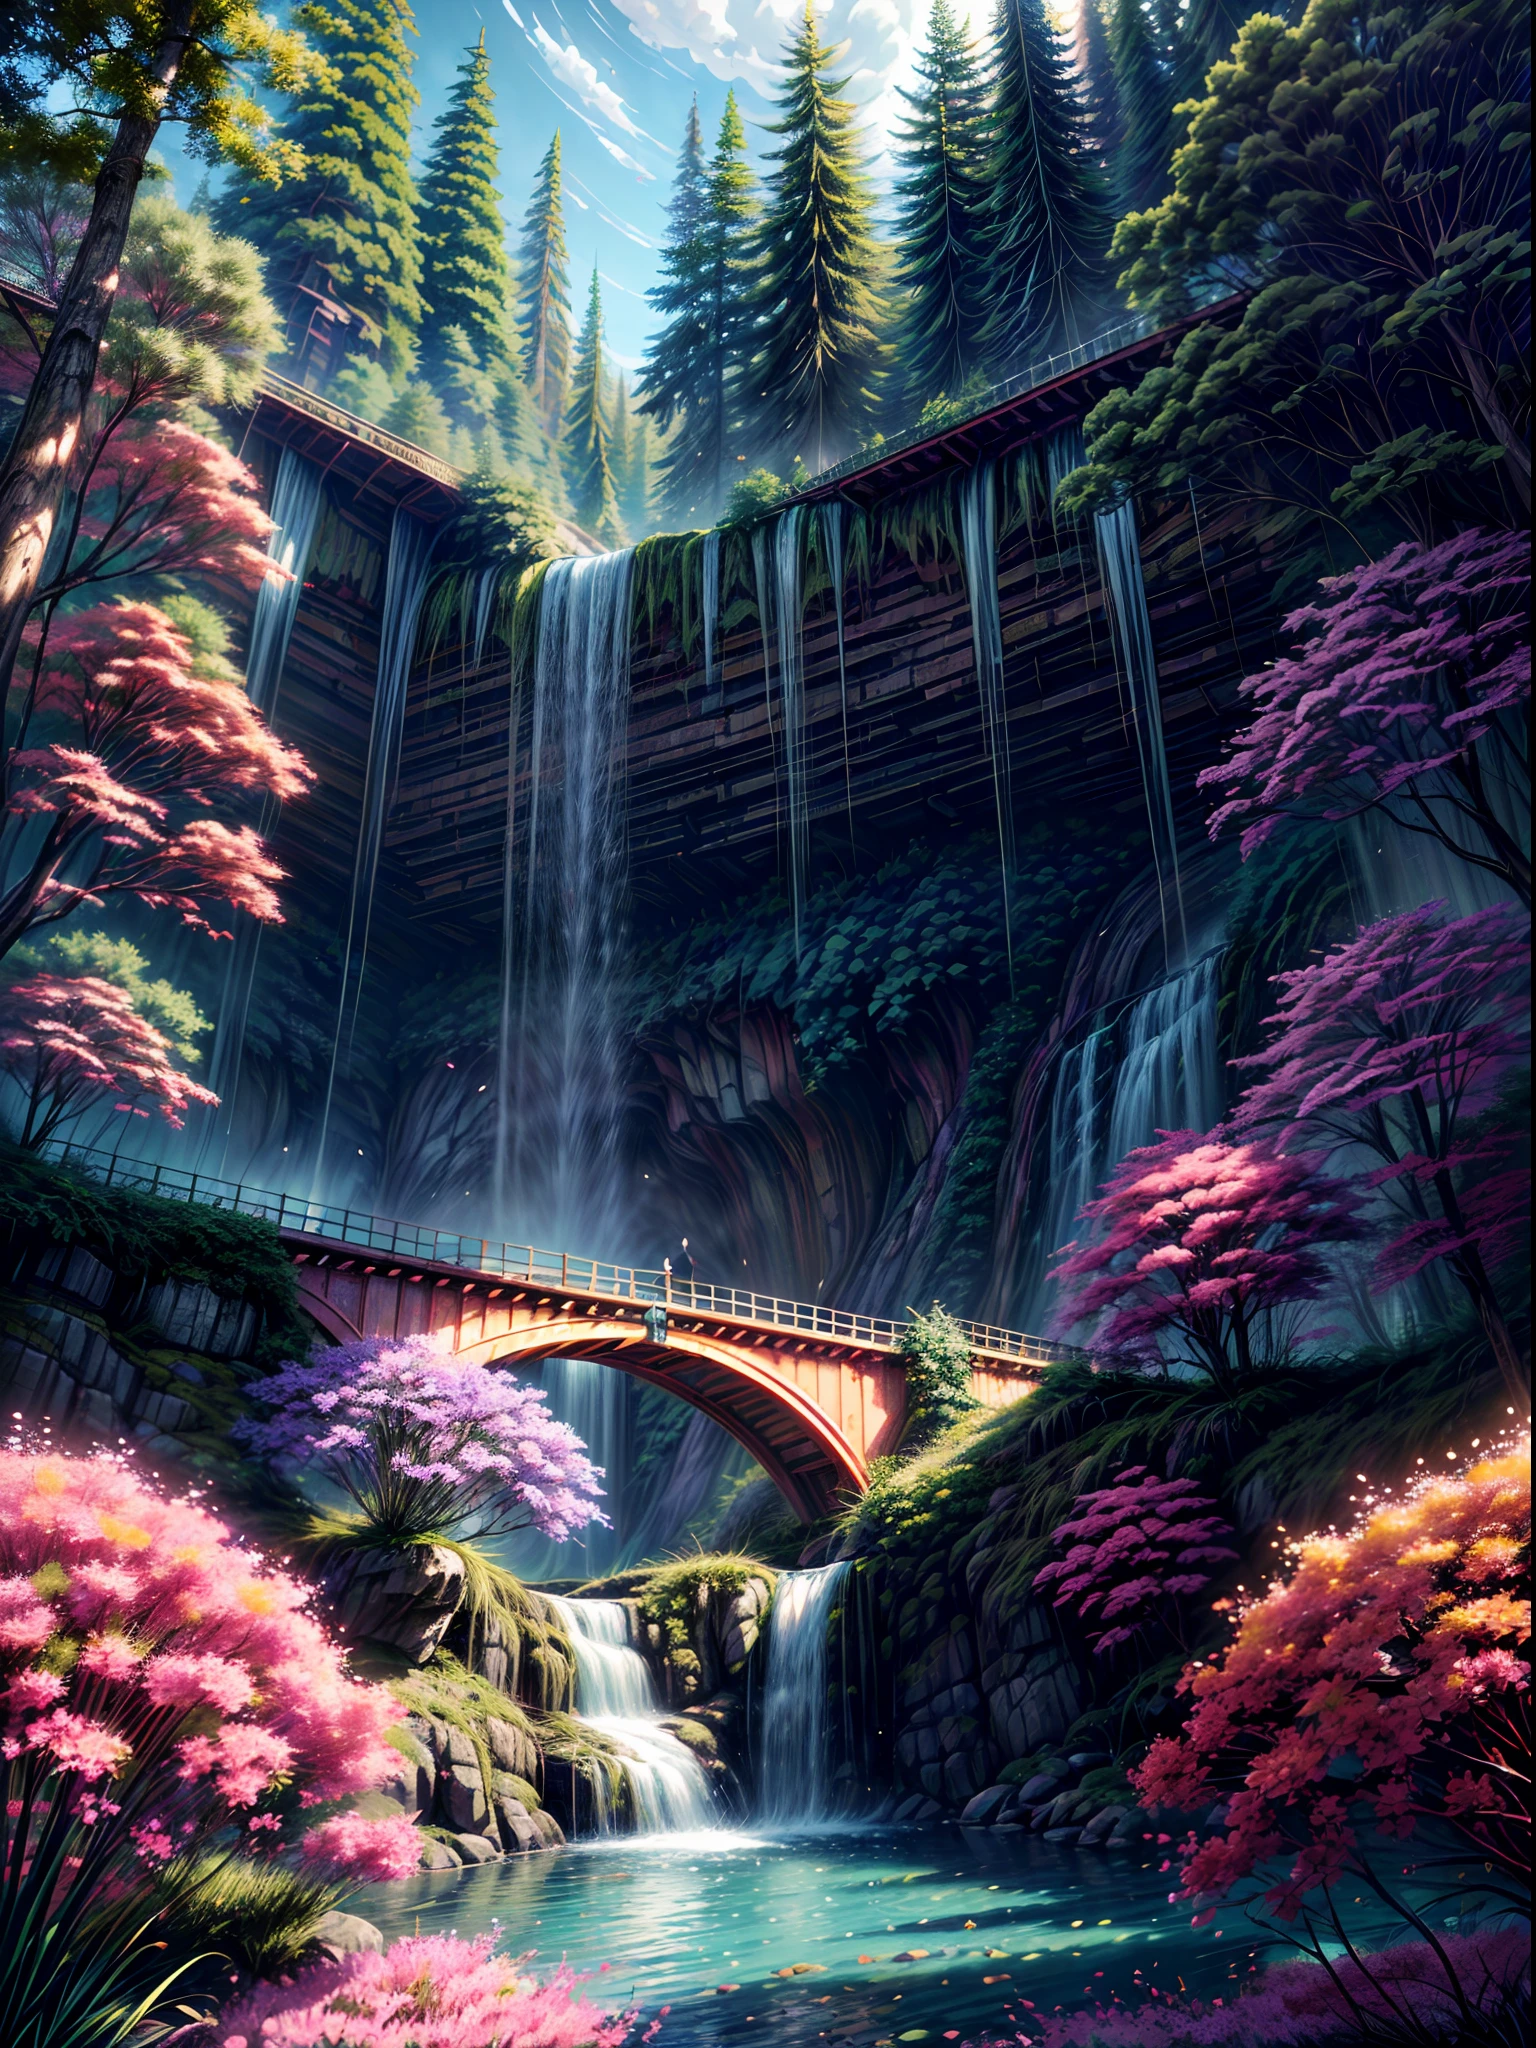 A beautiful bio펑크 waterfall in nature, 화려한, 꽃들, 소나무, 현수교, 펑크, 비플.